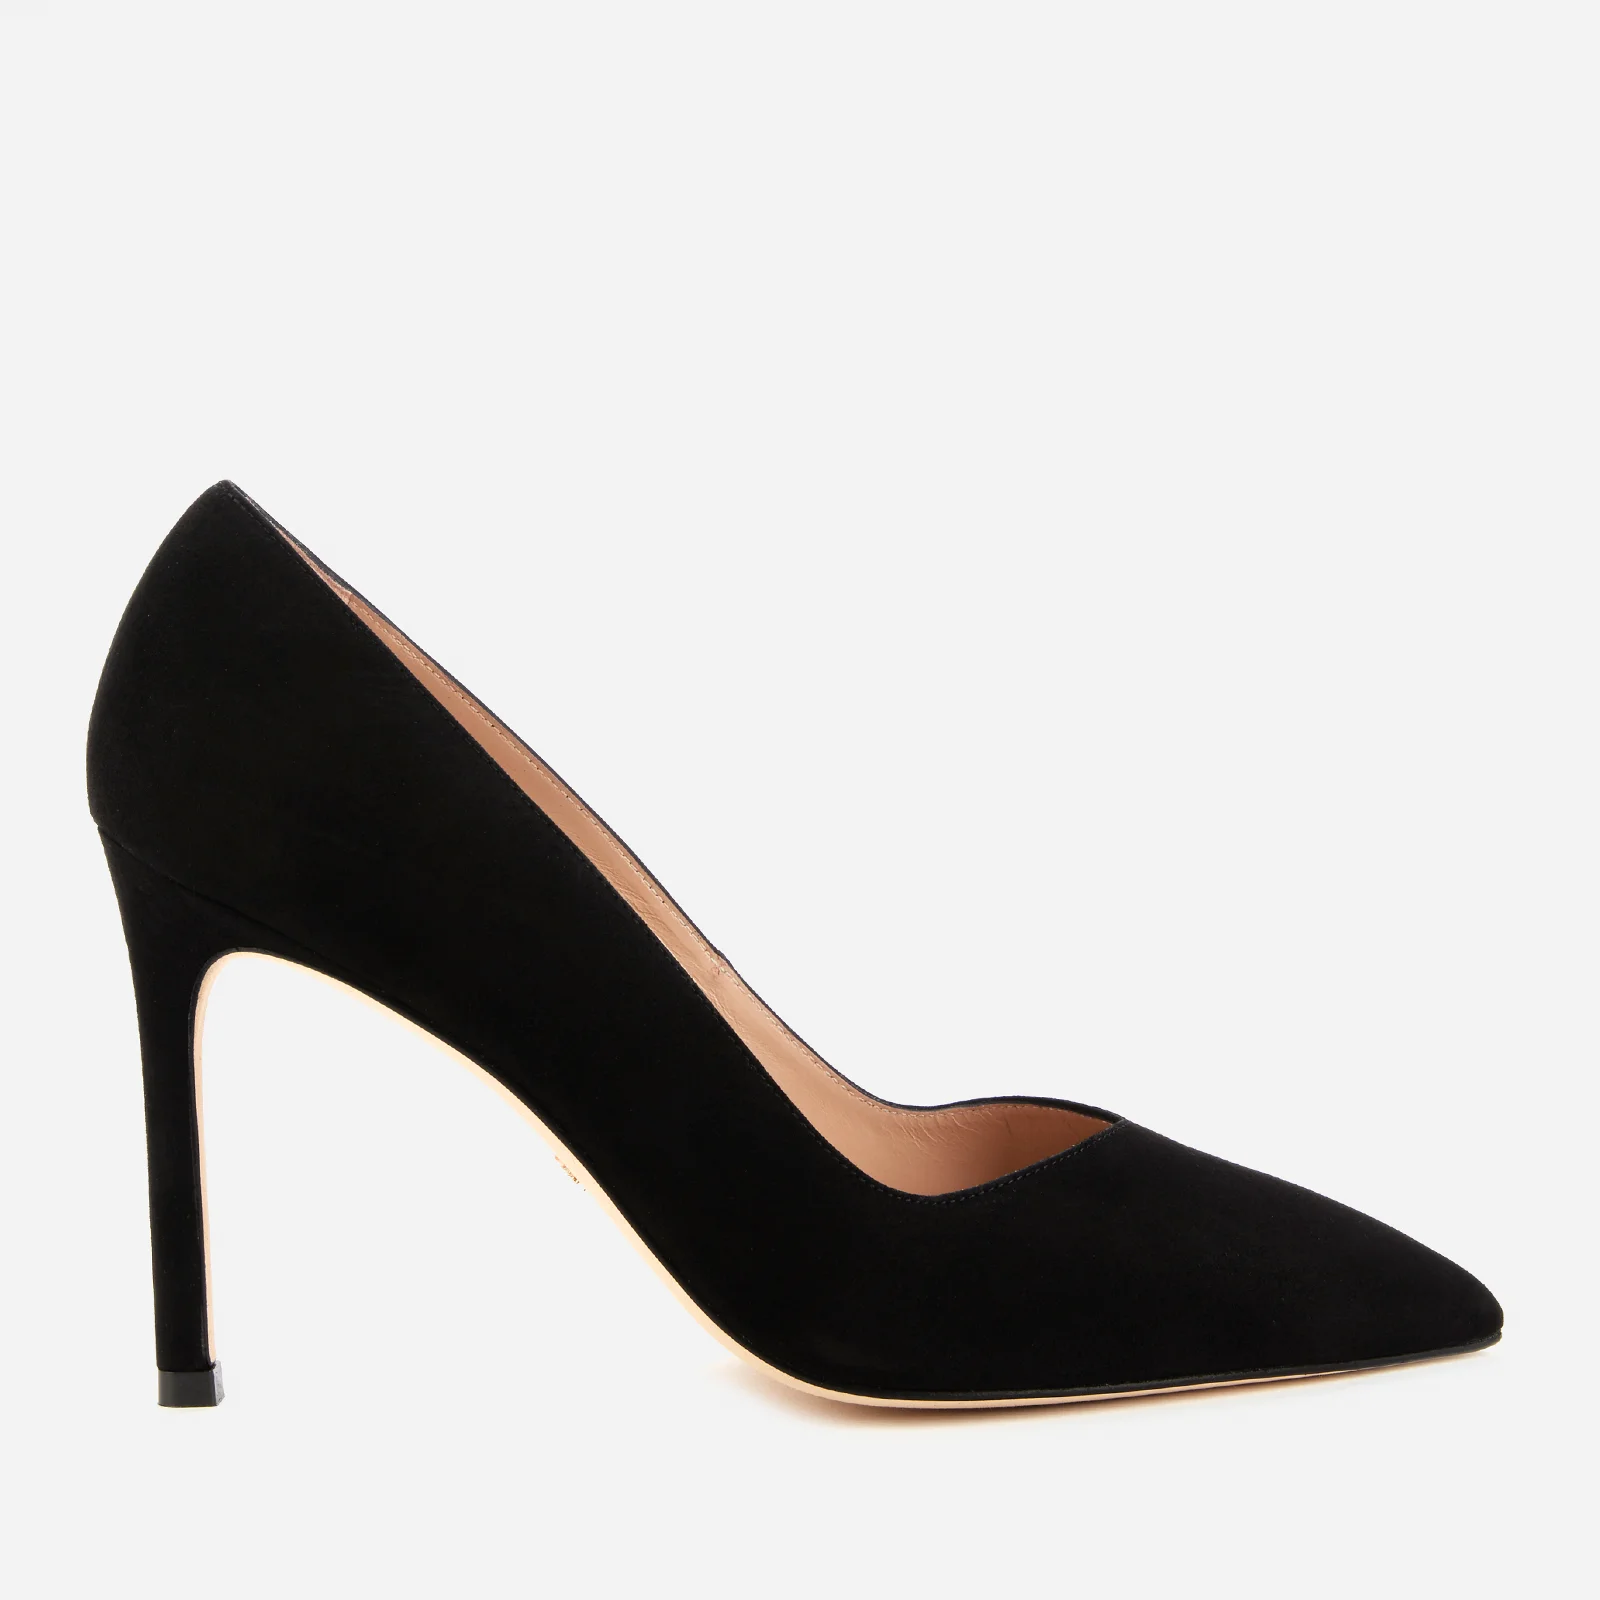 Stuart Weitzman Women's Anny Suede Court Shoes - Black Image 1